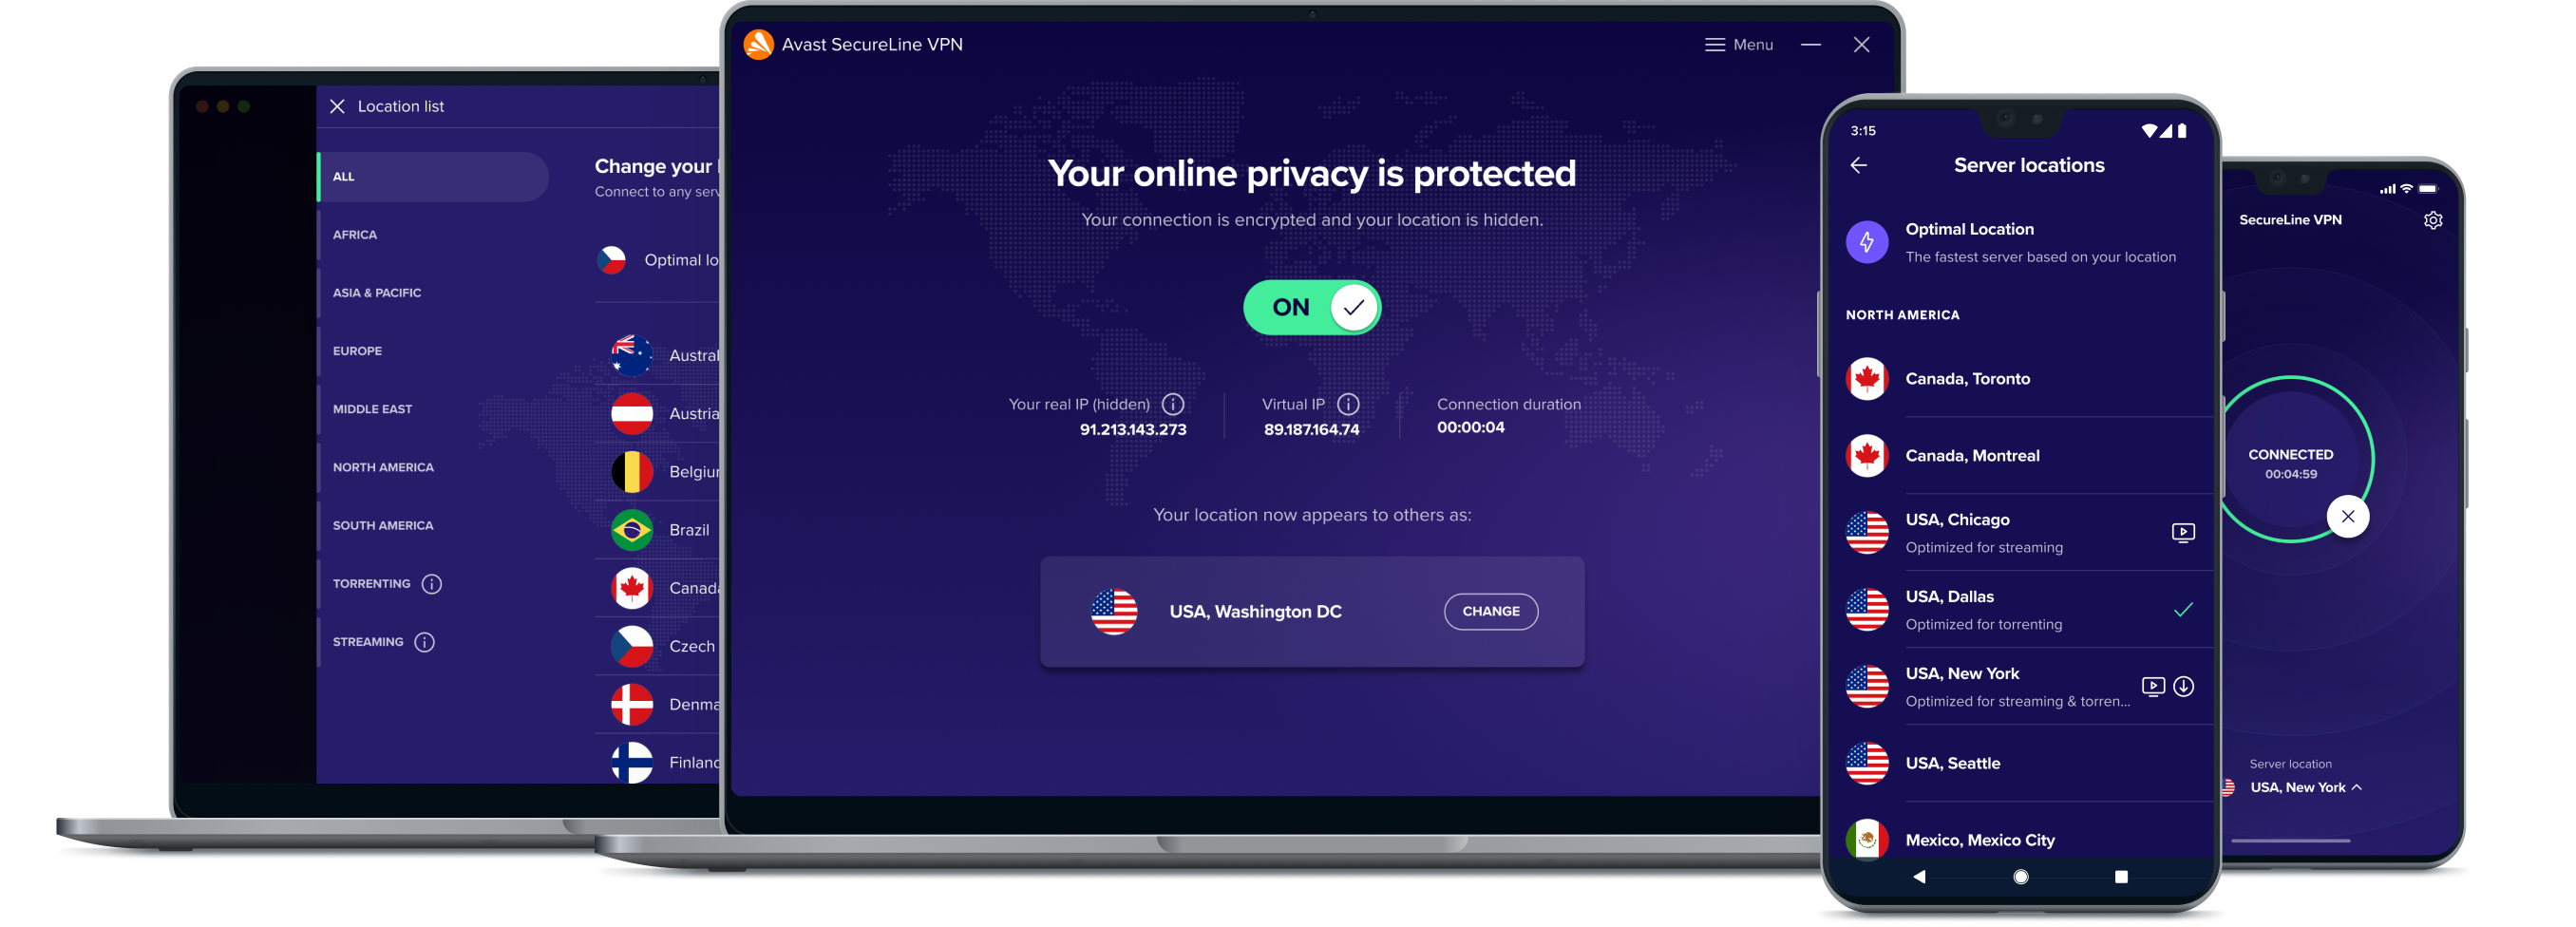 Lås upp större frihet på nätet med vår VPN-tjänst